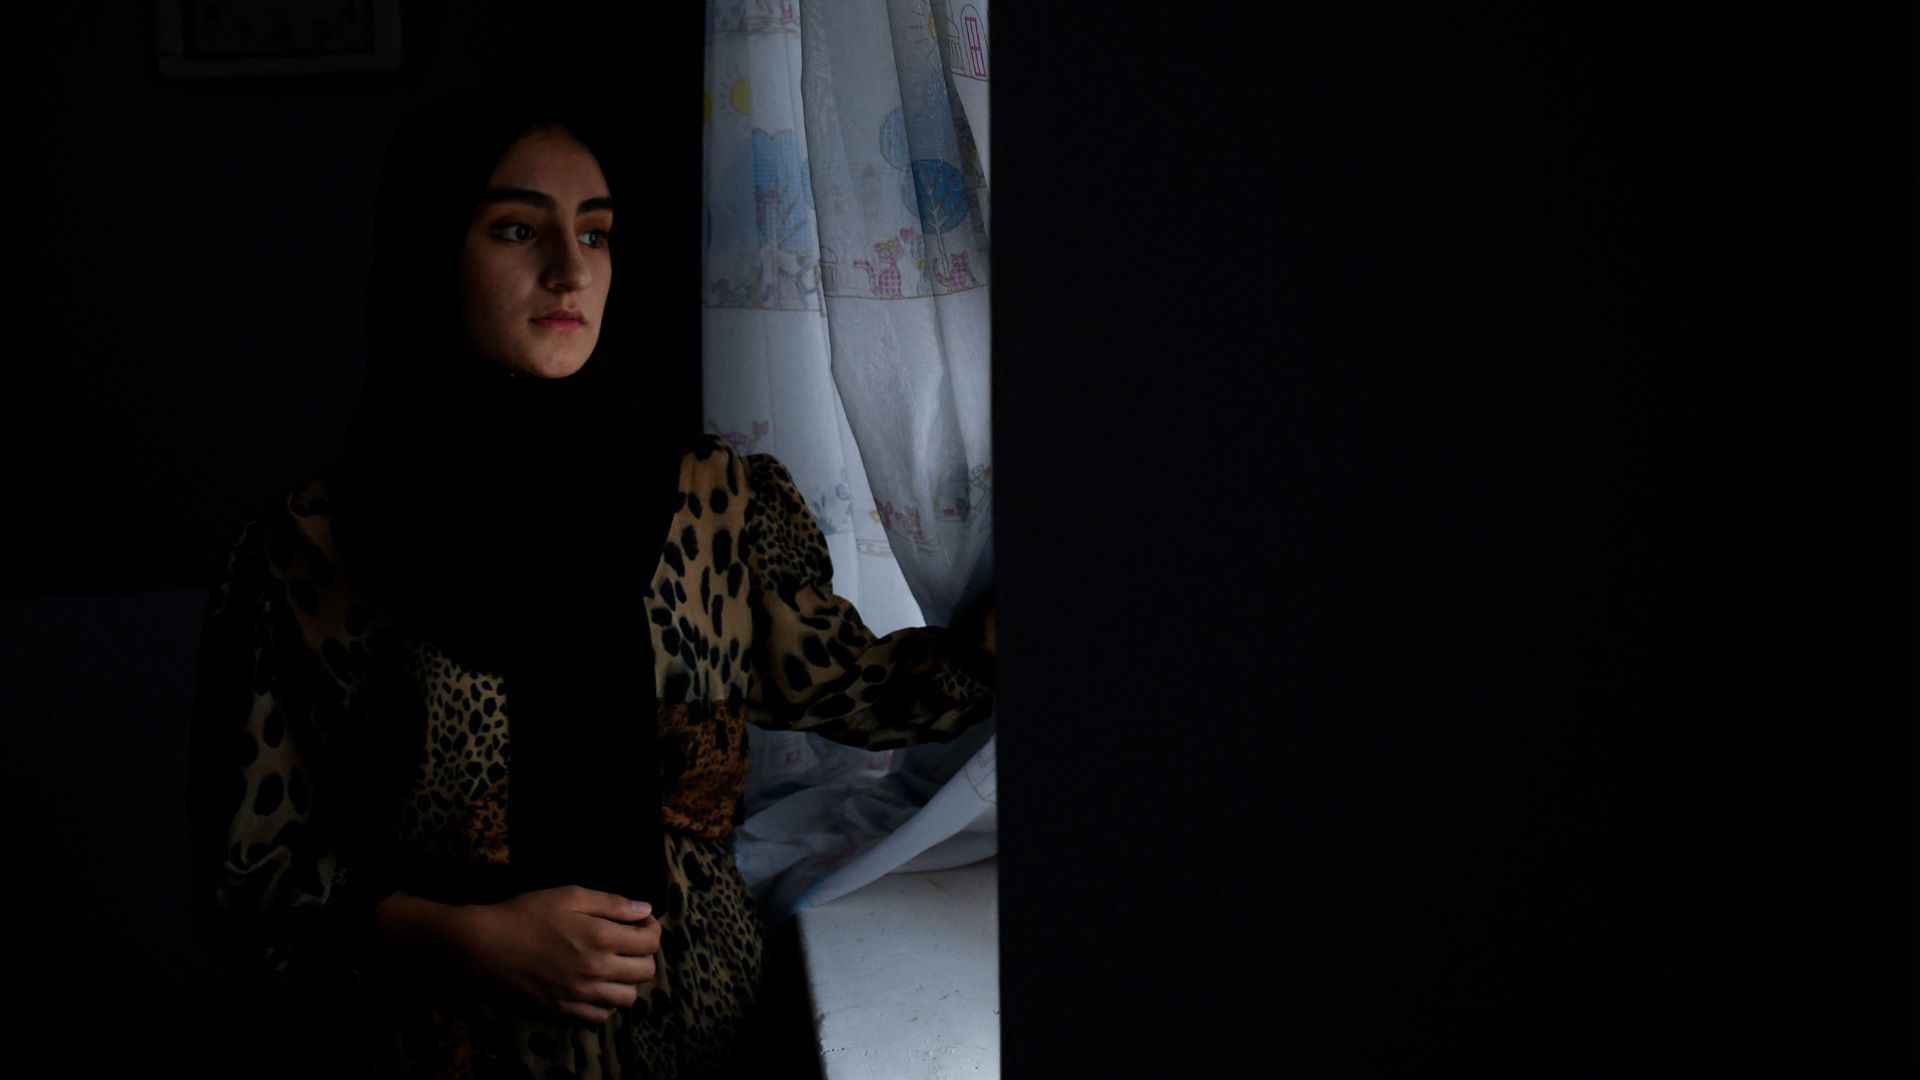 Freshta hautasi haaveensa koulutuksesta, Latifa menetti työnsä ja Maedah ei voi enää piirtää julkisesti kuvia naisista - Naiset kertovat, miten heidän elämänsä on muuttunut Afganistanissa: "Ikävöin kaikkea entisestä elämästäni" - Maailman Kuvalehti